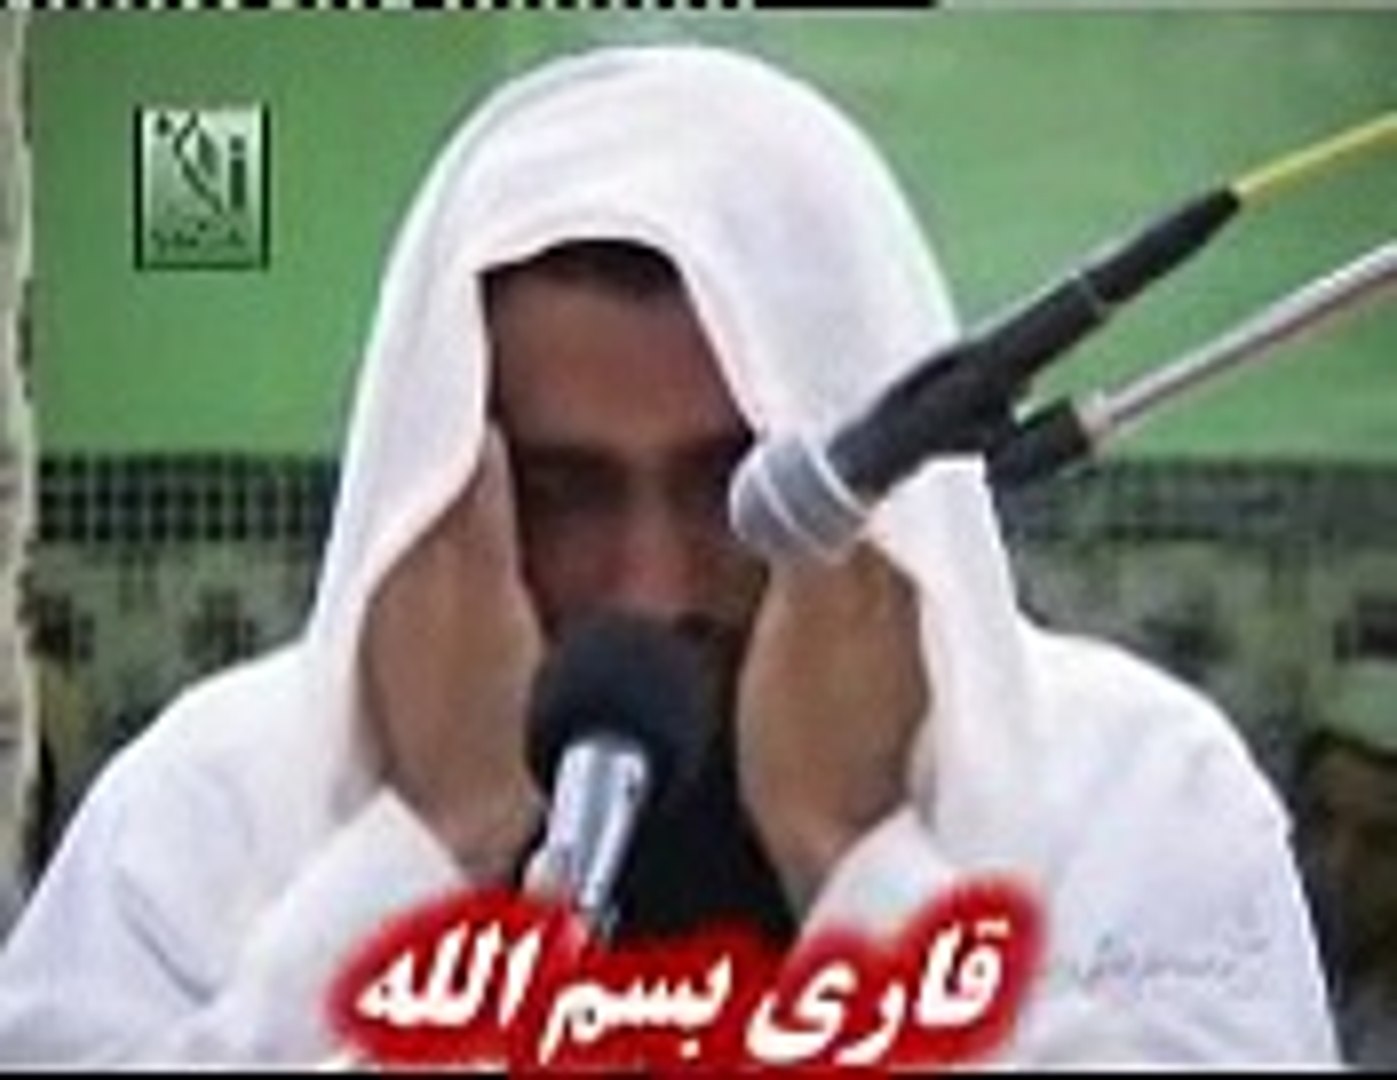 Sesi Kalpleri Titreterek Kuran Okuyan İmam-qari sheikh bismillah...(same  copy qari abdul basit) - Dailymotion Video